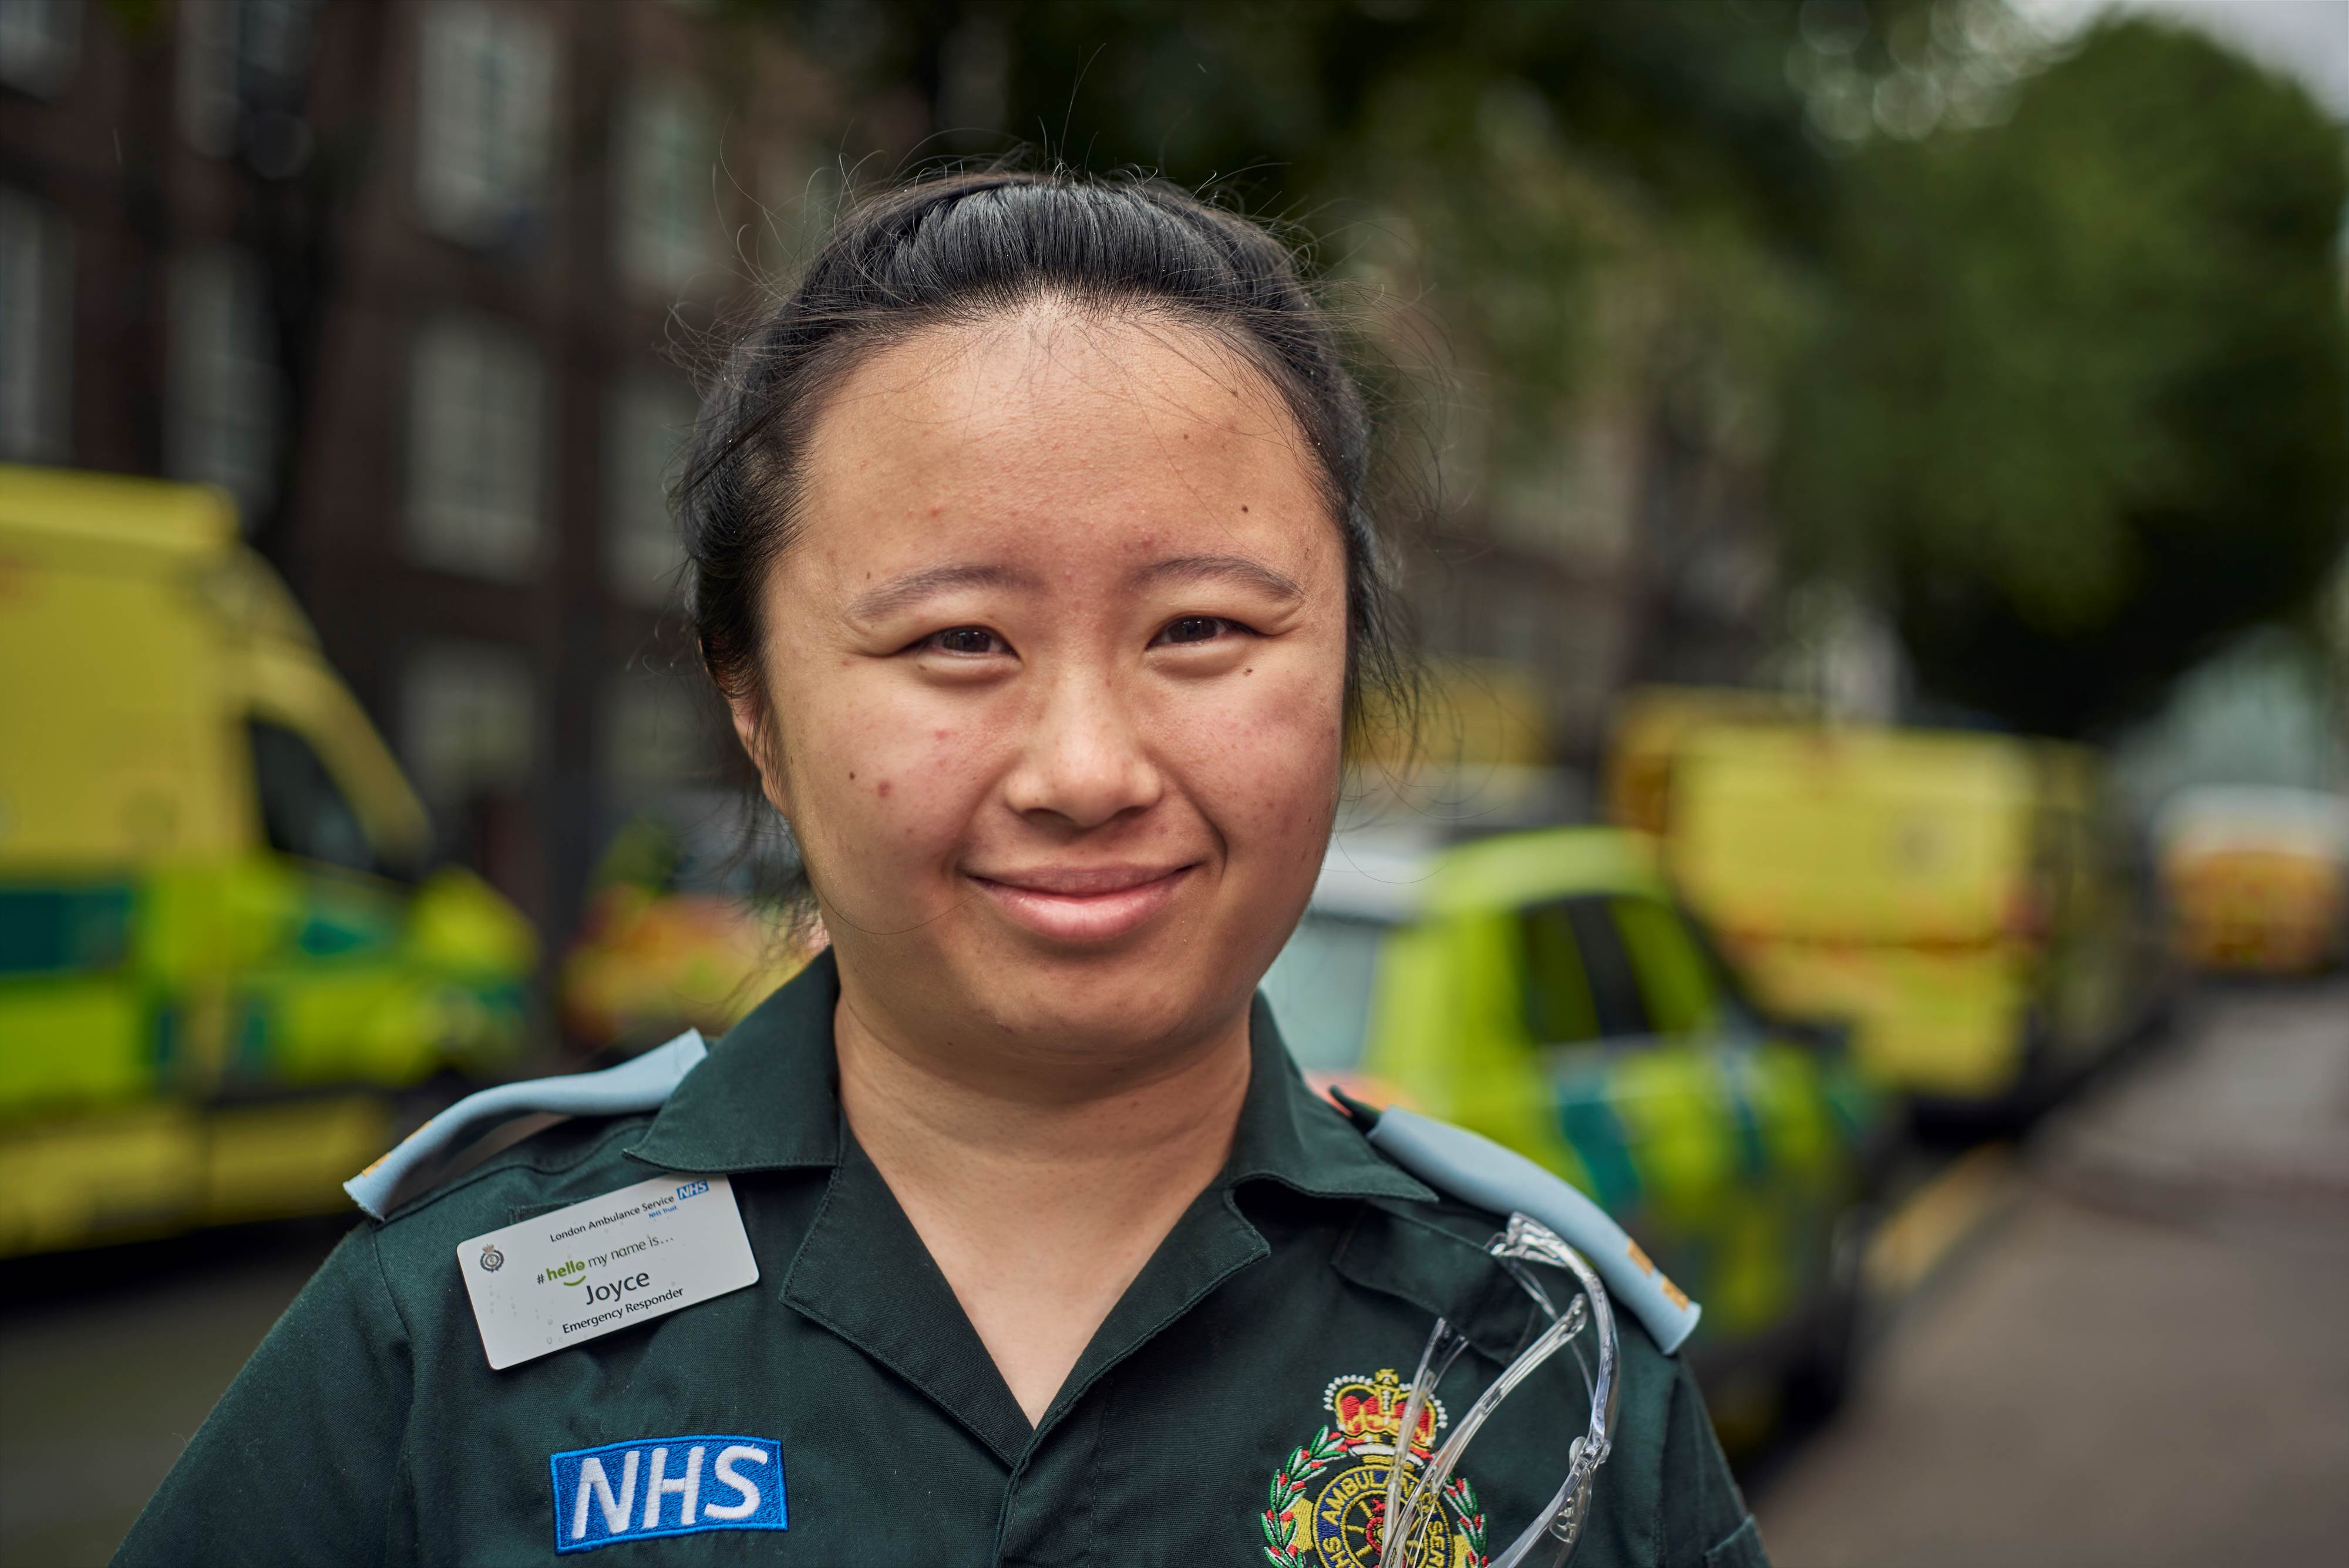 London Ambulance Service paramedic smiling at camera